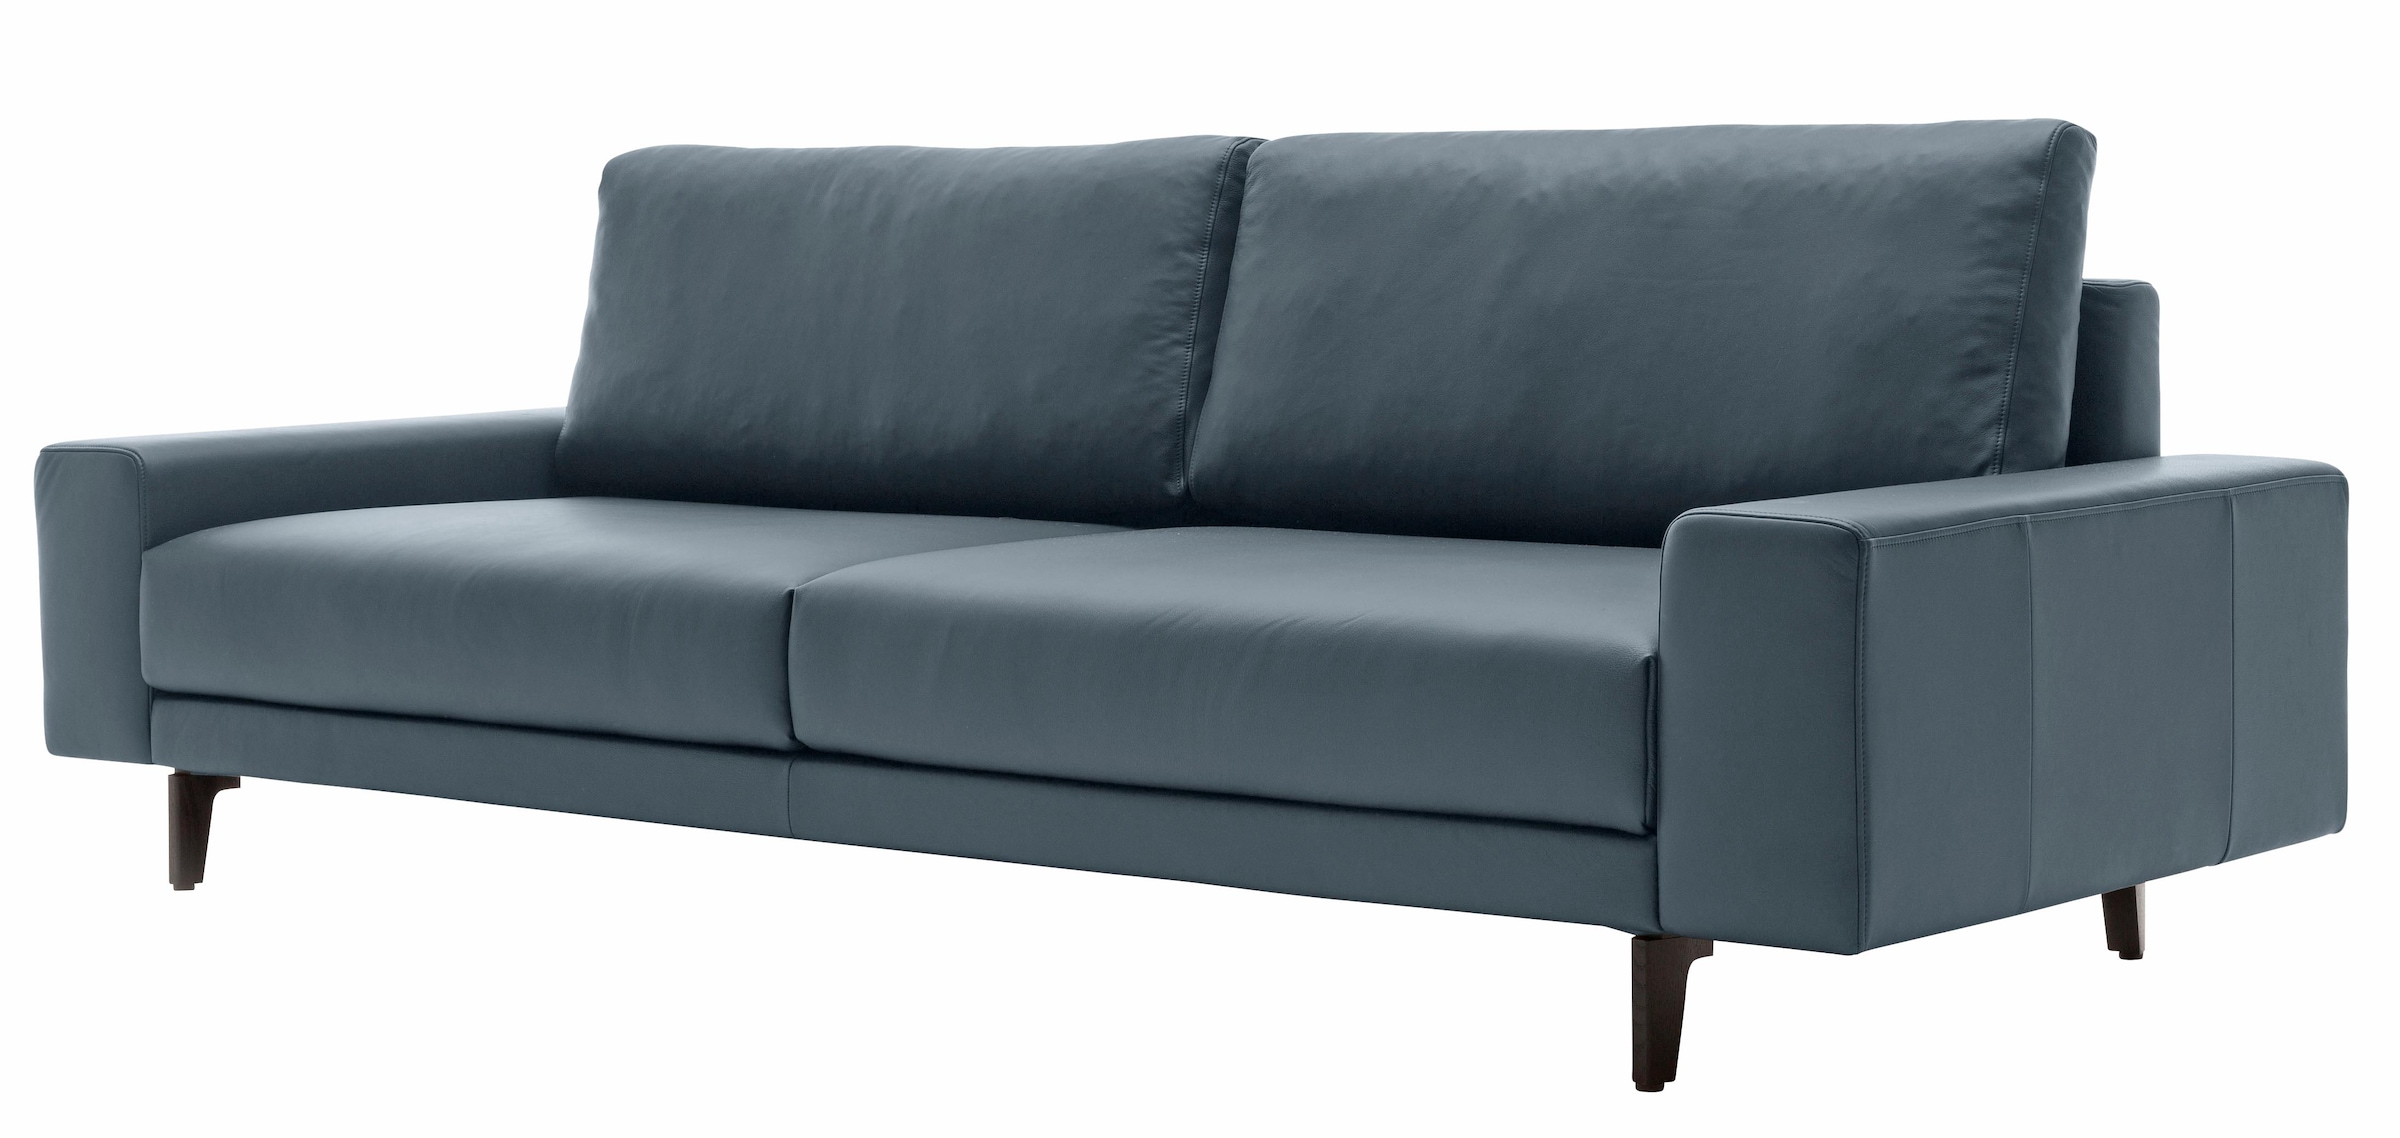 OTTO 220 niedrig, hülsta in Armlehne breit bei Alugussfüße Breite »hs.450«, 3-Sitzer cm sofa umbragrau,